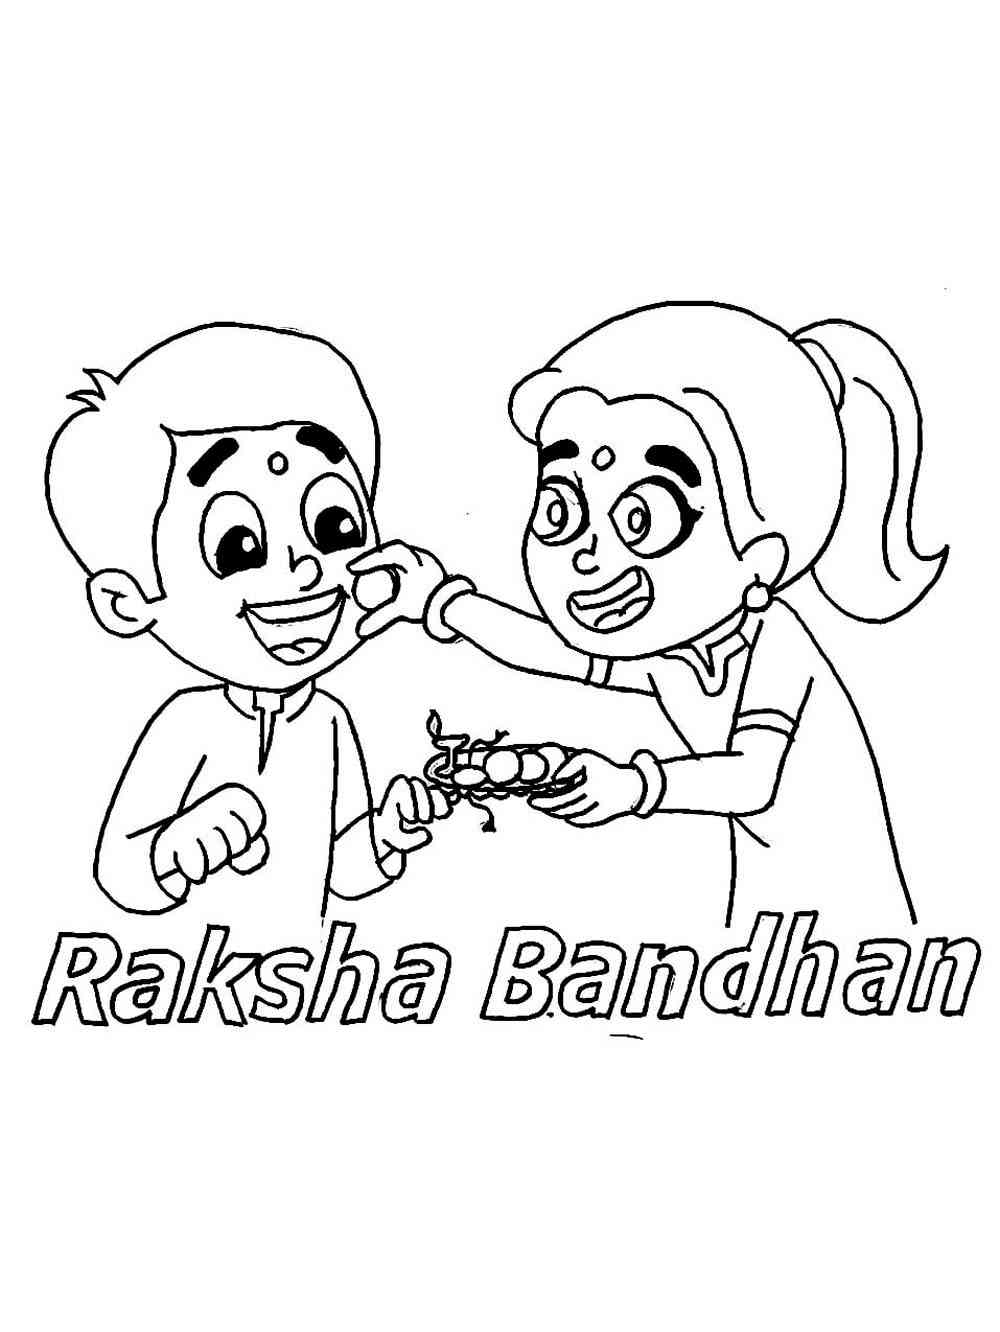 HOW TO DRAW RAKSHA BANDHAN DRAWING|BHAUBEEJ DRAWING EASY|RAKSHA BANDHAN  SPECIAL DRAWING | Easy drawings, Raksha bandhan drawing, Scenery drawing  for kids